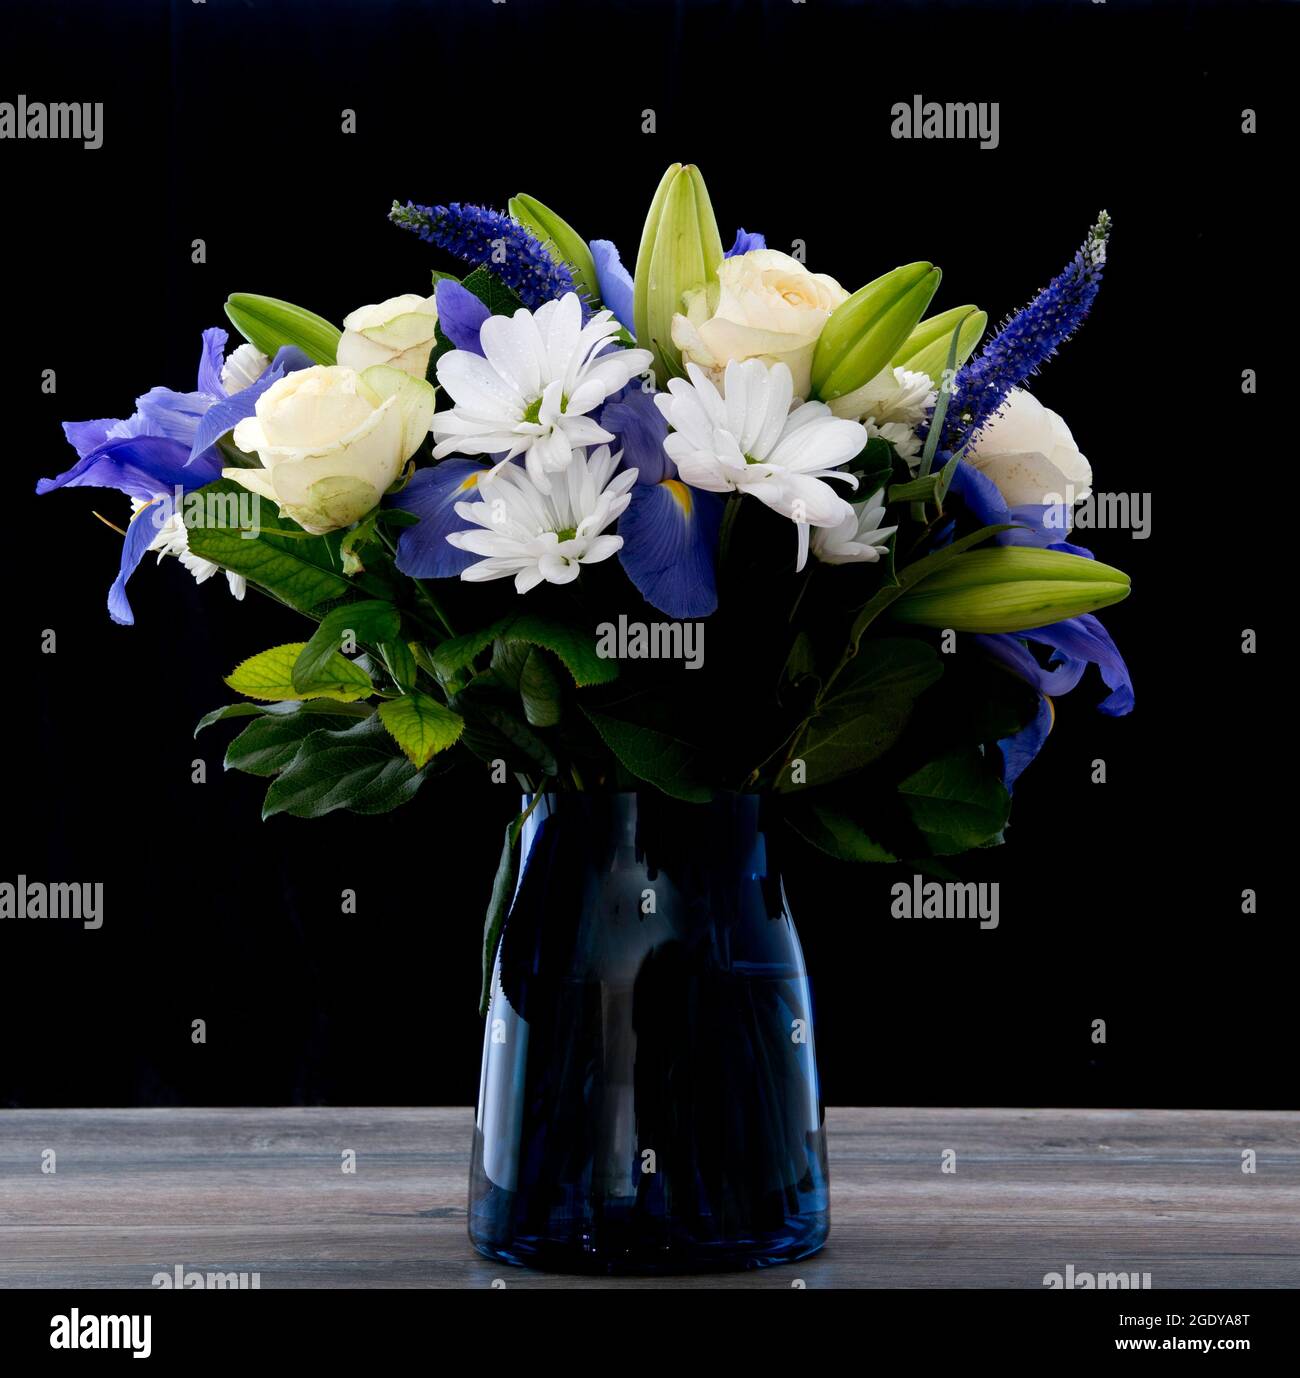 Condolences sympathy card floral lily bouquet Vector Image